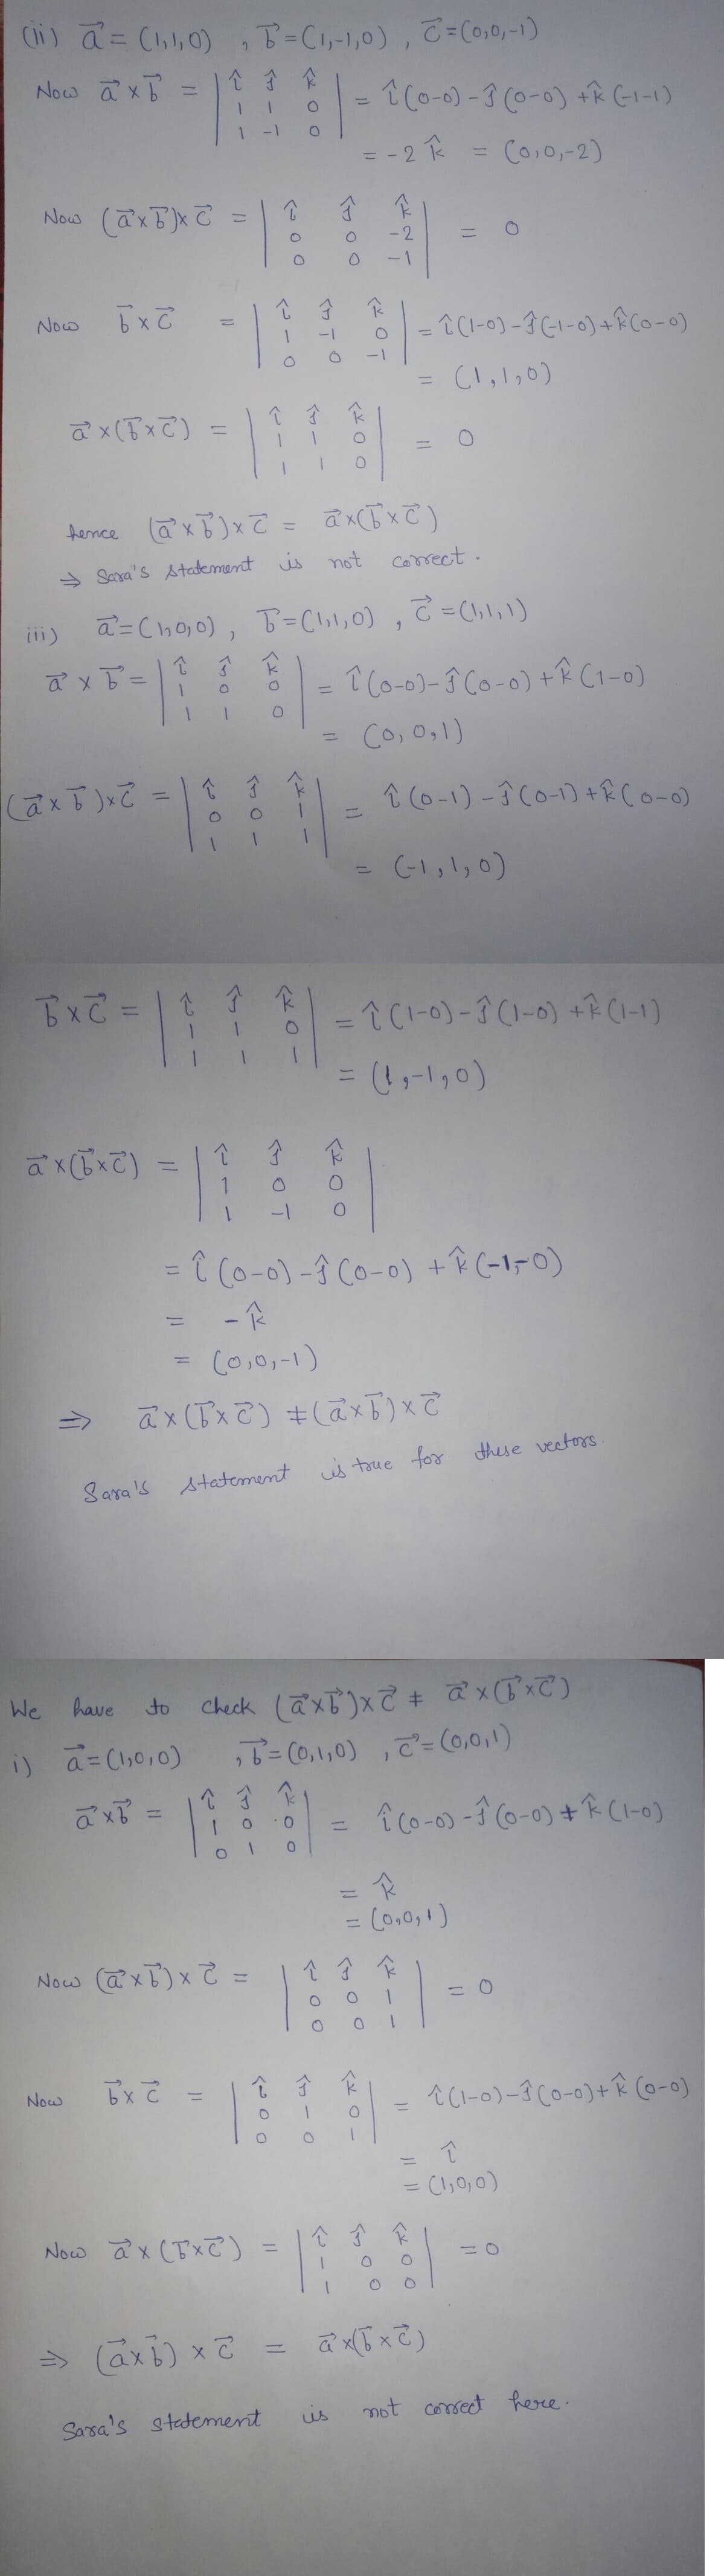 (ii) a = (1,1,0), B² = (1,-1,0), C = (0,0,-1)
Now axb:
个子企
=
1 (0-0)-3 (0-0) + (-1-1)
=
= -2 k
=
(0,0,-2)
Now (axb)xc
R
=
Now
bx c
î(1-0)-3(-1-0) + (0-0)
(1,1₂0)
î Ĵ
ax (√x c)
=
=
fence (@²x b)x= = ax(5x)
→ Sara's statement is not correct.
(ii)
a = (10,0), B² = (1,1,0), ² = (1, 1, 1)
9
î
1
ả xổ
=
1
O
1 (0-0)-3 (0-0) + (1-0)
=
=
(0,0,1)
↑ J K
î
cả XE) xã
î (0-1)-1 (0-1) +R (0-0)
(-1,1,0)
=
bxc = | 1 1 K
-î (1-0)-3(1-0) + ^ (1-1)
= (1₁-1₂0)
ax(bxc)
소
Ĵ
F
=
1
-1
= ↑ (0-0)-1 (0-0) + (-1-0)
-K
(0,0,-1)
ax(bx2) + (axb) x c
Sara's statement is true for these vectors.
We
have
to
Check (axb)x2 + ax(x)
i) a = (1,0,0)
₂7² = (0,1,0), c²= (0,0,1)
ả xổ
M
Now (axb) x 2 =
bxc
Now
Now ax (x²)
=> (axb) x 2
Sara's statement
=
2- 0 -
=
N
701
۲۲ - -
<200
î
ਕਿ
13
=
=
ㅇㅇ)
=
من
K
17 & 8 ) =
î (0-0)-1 (0-0) + (1-0)
0
R
N
= (0,0,1)
=
↑ Ĵ K
1
= 0
î Ĵ
k
=
| |-^ 2
^(1-0)-1 (0-0)+ (0-0)
↑
-
= (1,0,0)
소소 소
ax(x2)
not correct here.